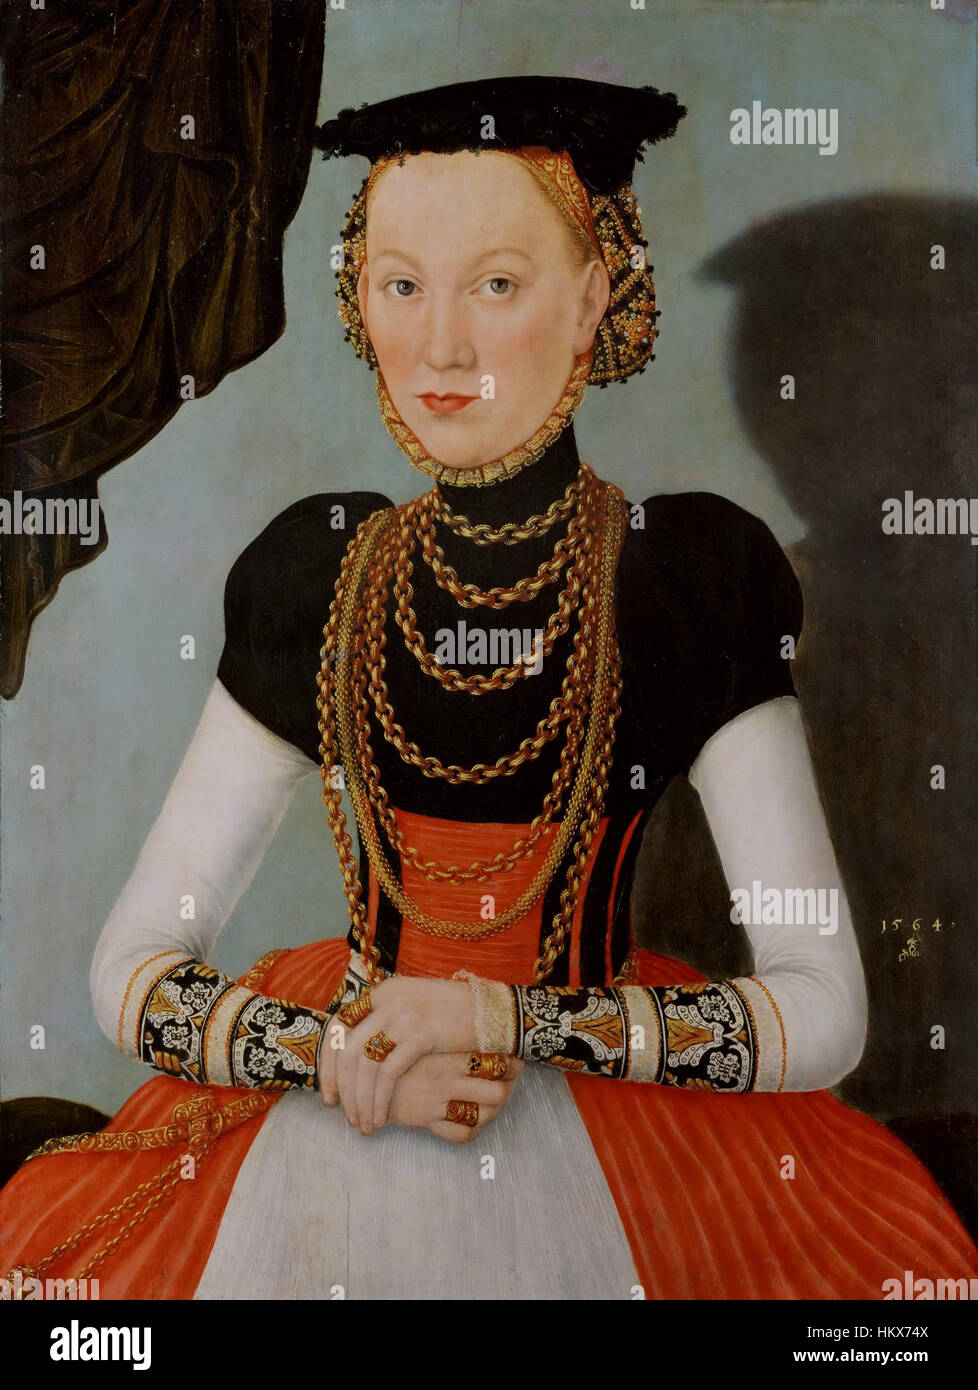 Lucas Cranach d.J. - Weibliches Bildnis, 1564 (Kunsthistorisches Museum) Foto Stock